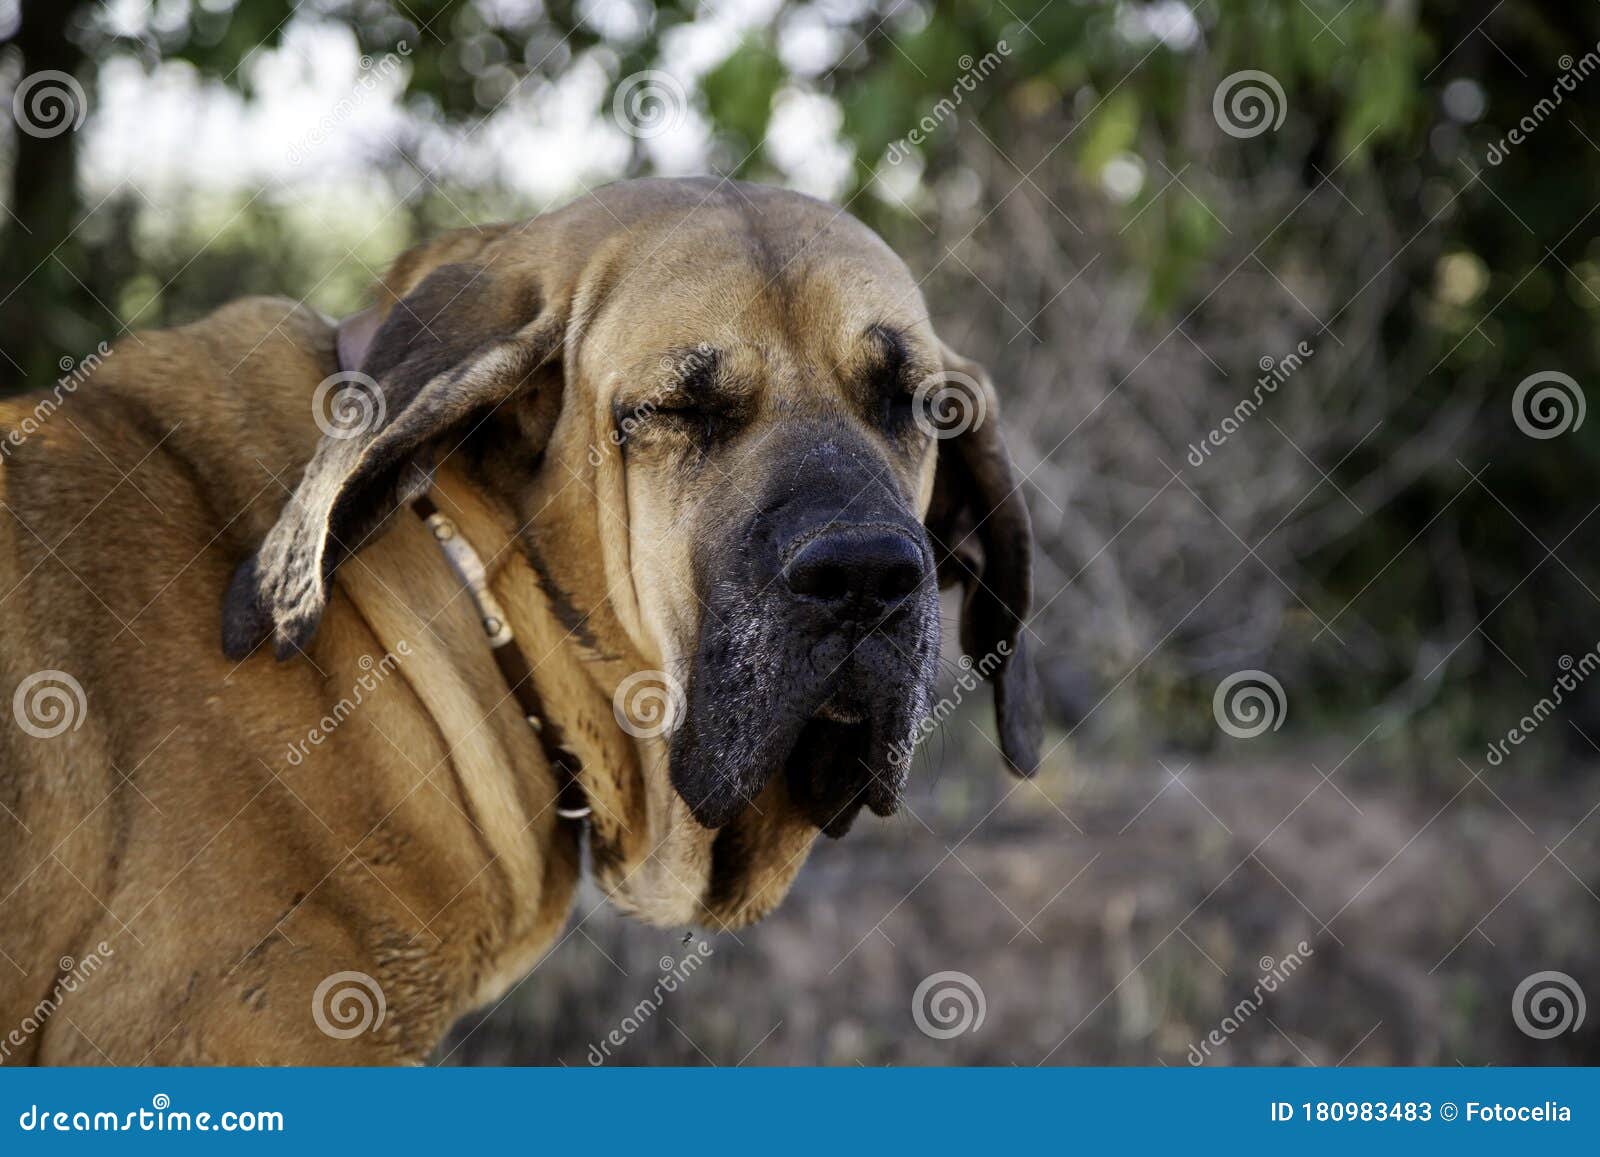 Dog fila brasileiro stock image. Image of canine, length - 180983483